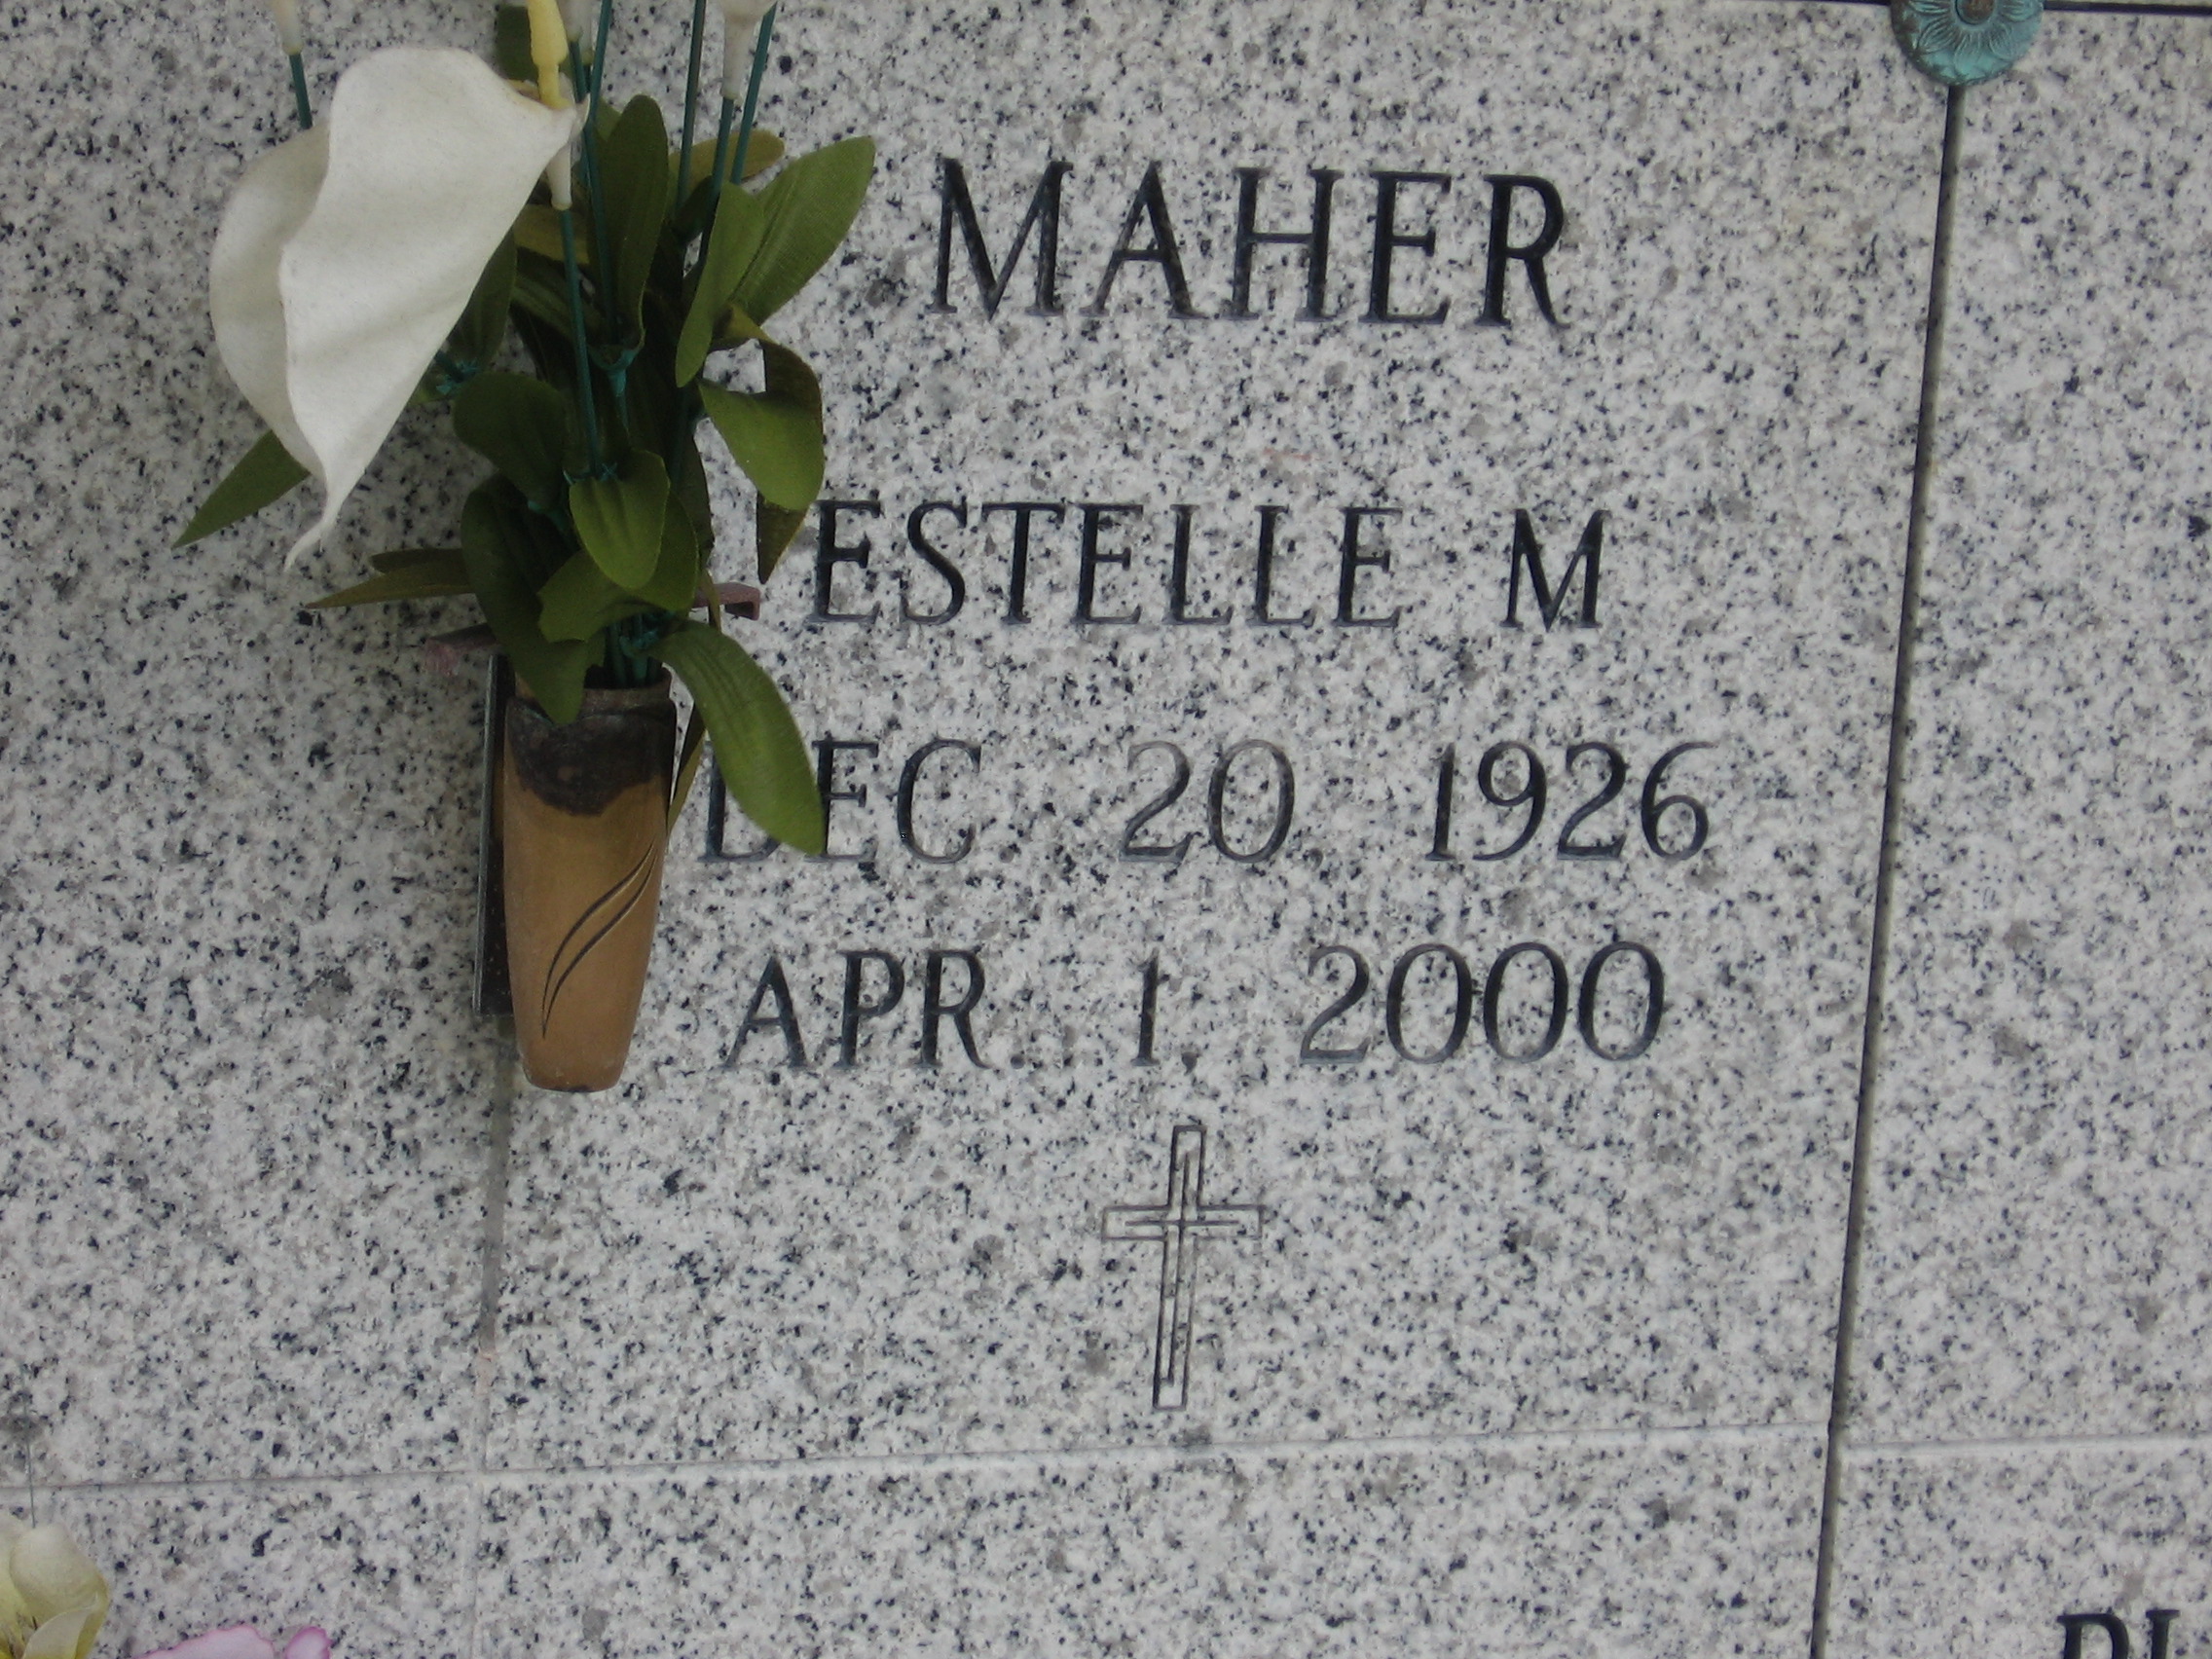 Estelle M Maher